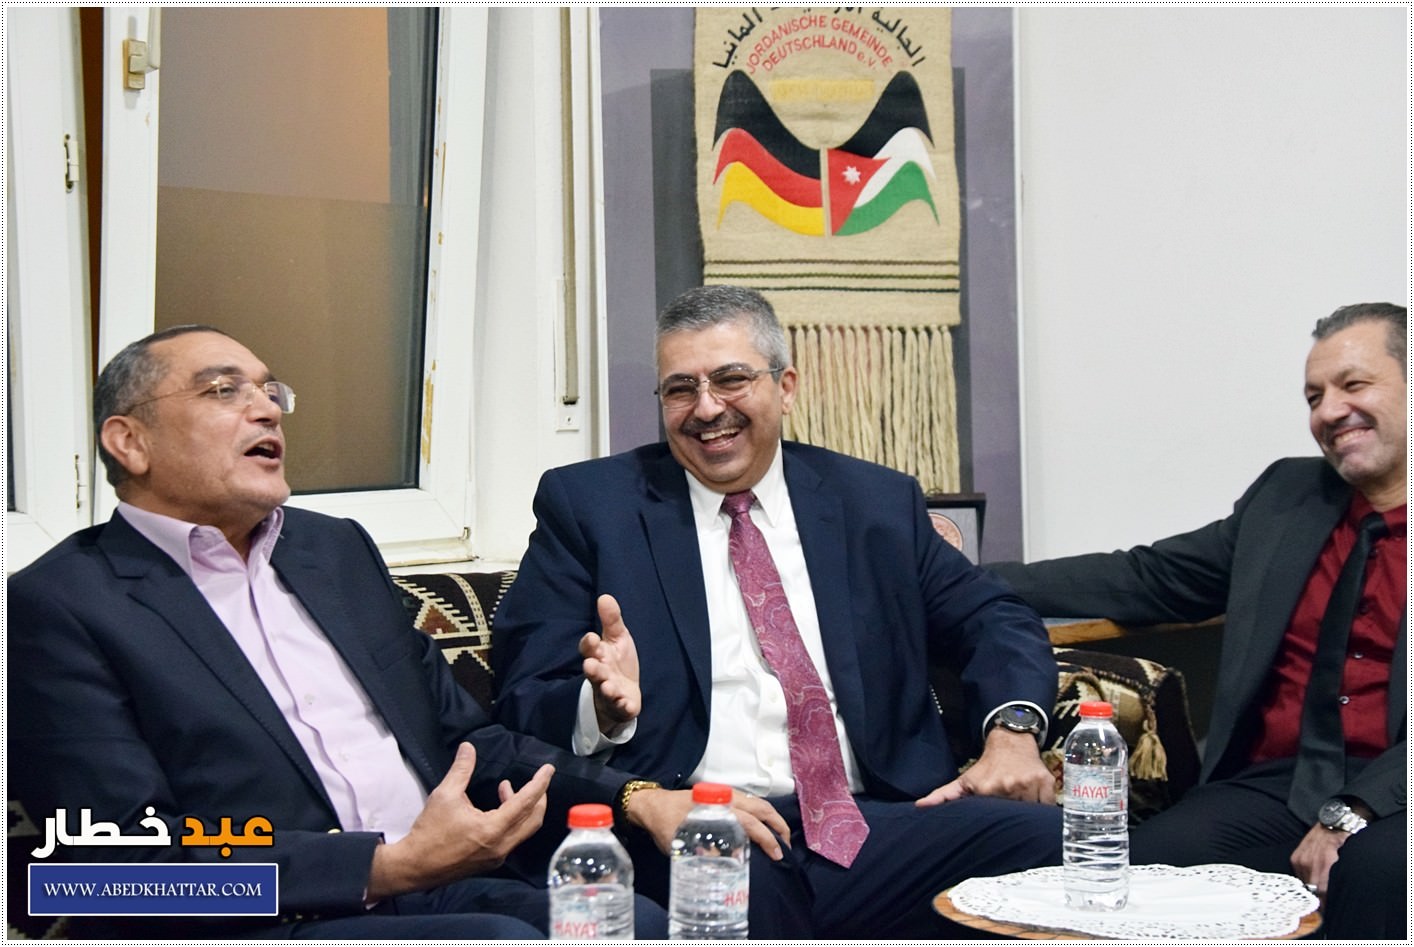 الجالية الأردنية تستضيف سعادة السفير الدكتور بشير الزعبي سفير المملكه في المانيا وضيوف من البرلمان الاردني